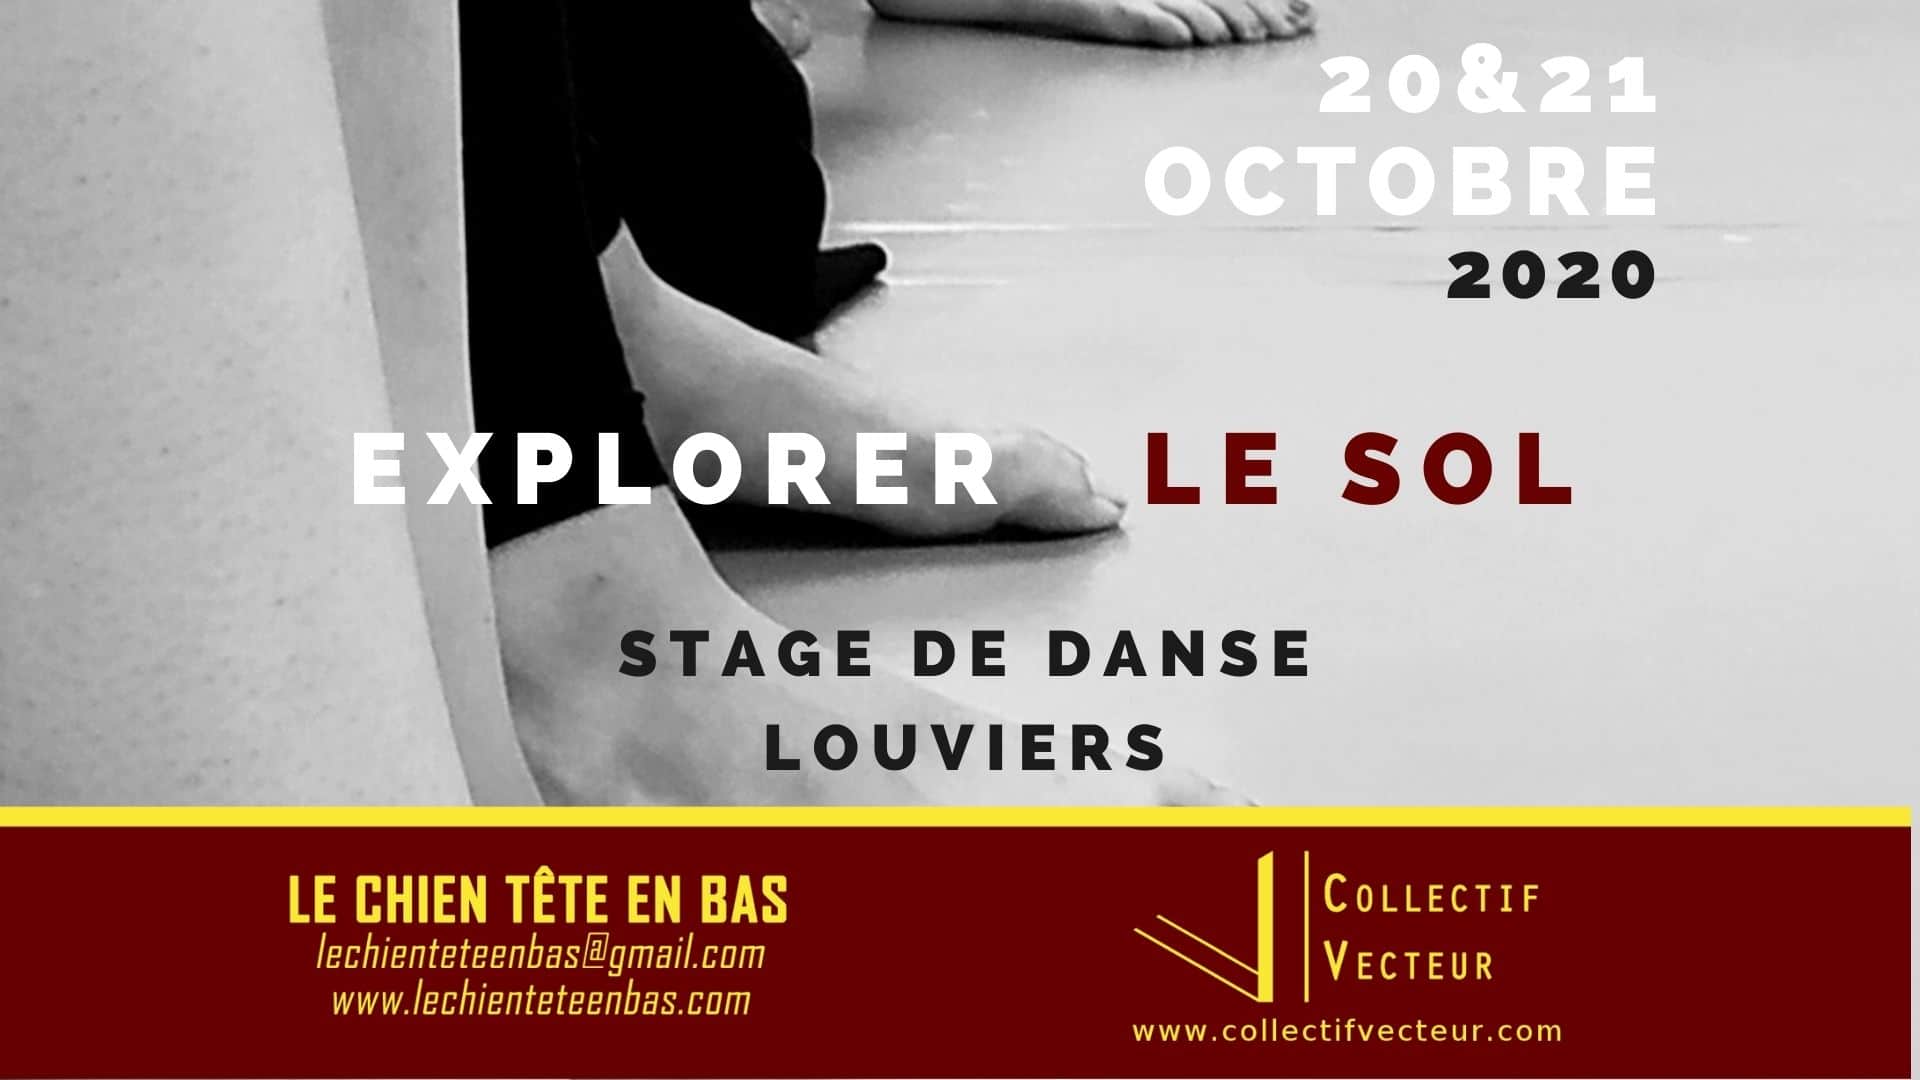 événement atelier stage danse remous SOL lechienteteenbas Louviers